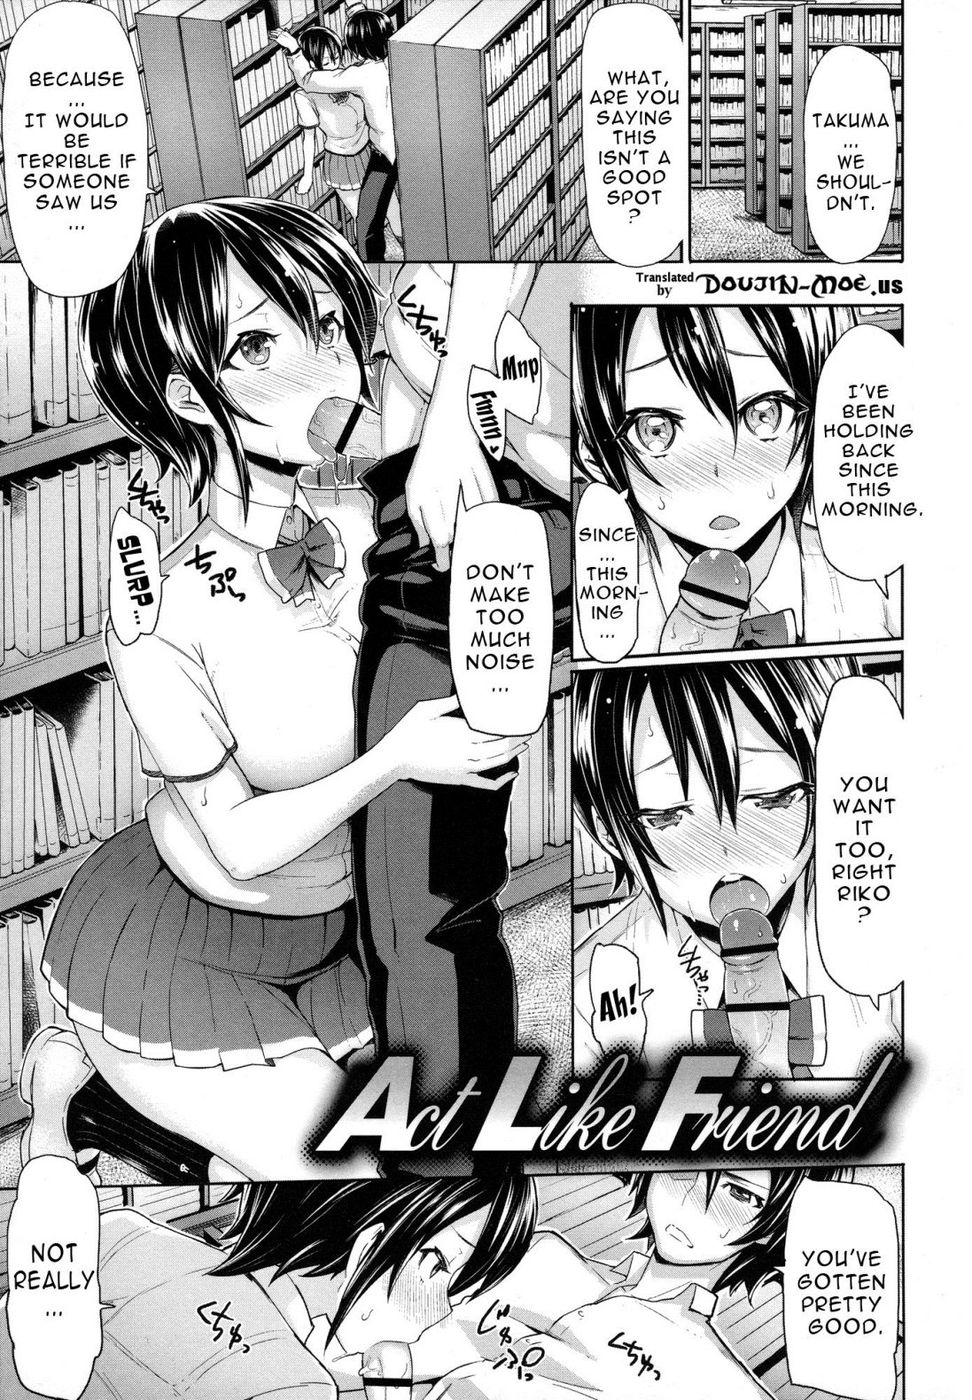 Hentai Manga Comic-Limit Break 3-Chapter 6-Act Like Friend-1